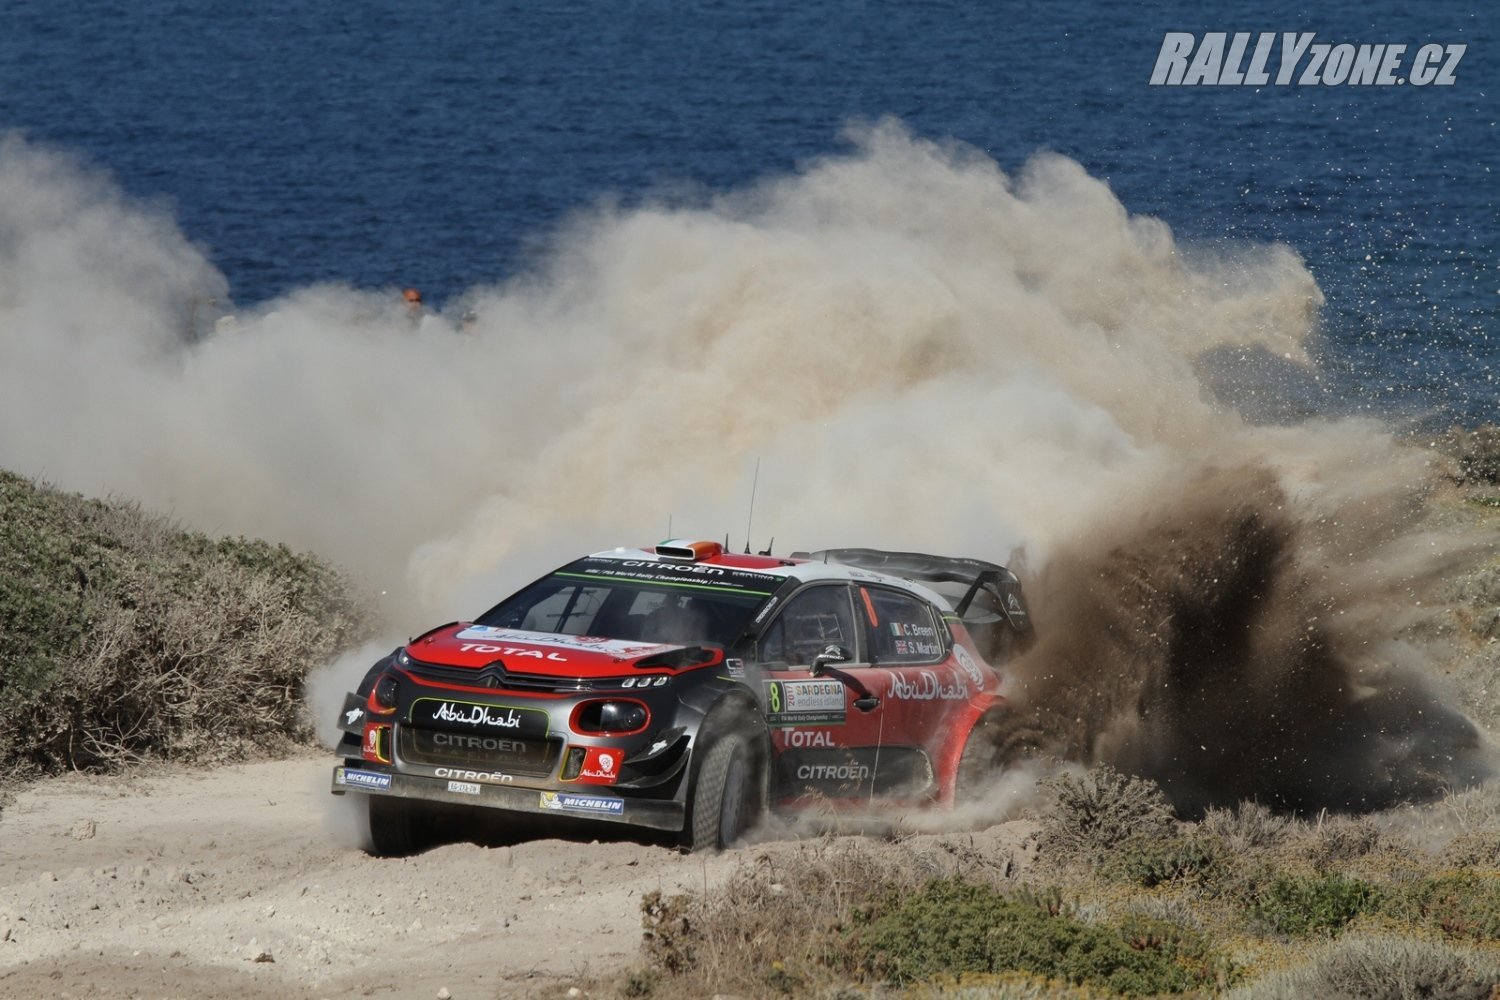 Bude Citroën C3 WRC signifikantněji silnějším speciálem v příští sezoně?